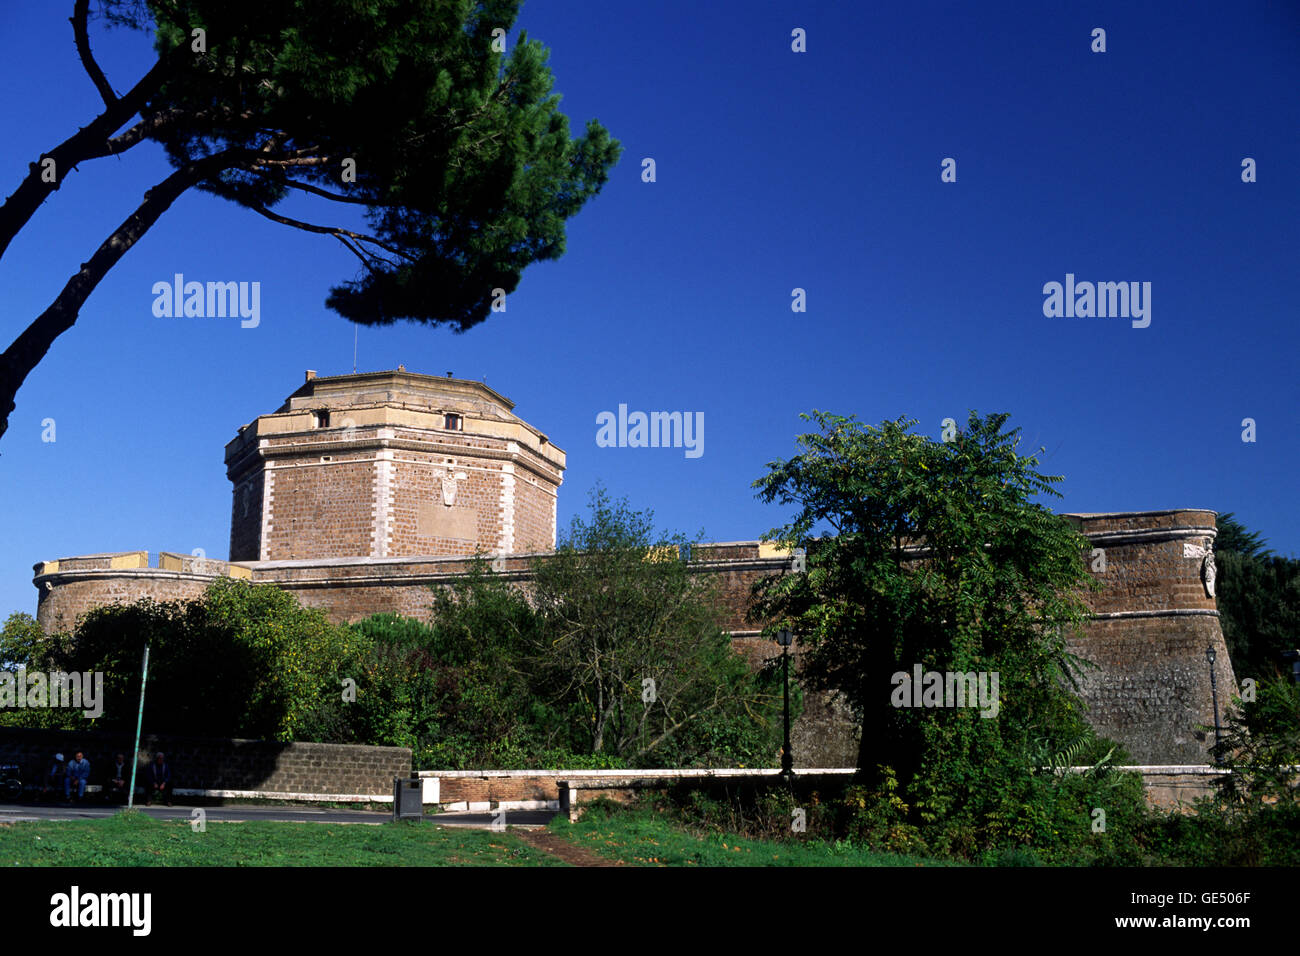 Italy, Lazio, Civita Castellana, rocca, fortress Stock Photo